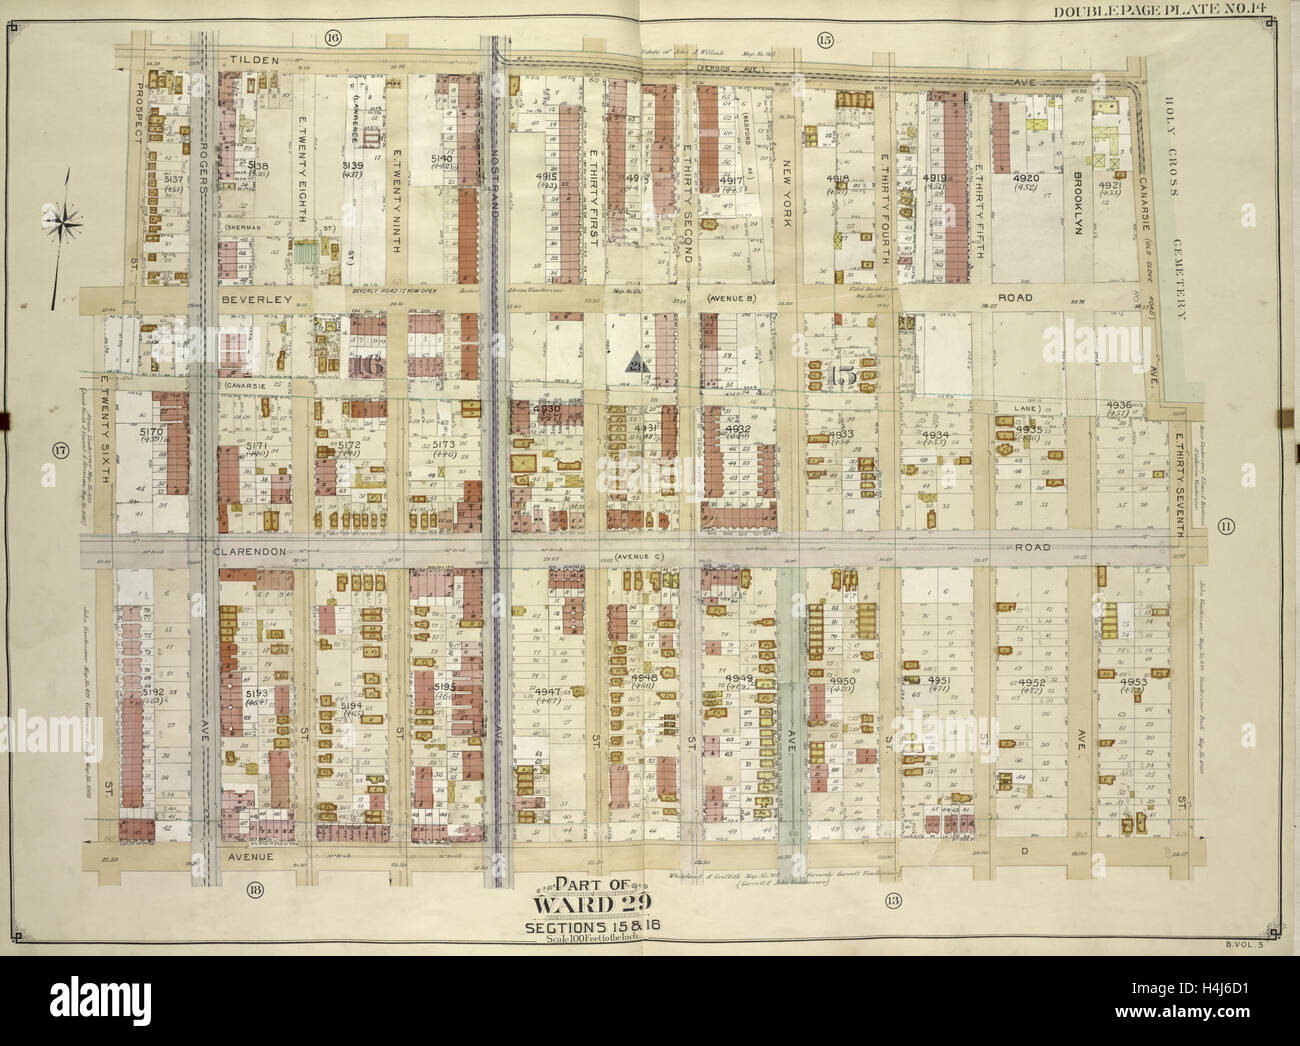 Brooklyn, Jg. 5, doppelte Seite Platte Nr. 14; Teil der Gemeinde 29, Abschnitt 15 & 16; Karte von Tilden Ave., Canarsie Ave begrenzt Stockfoto